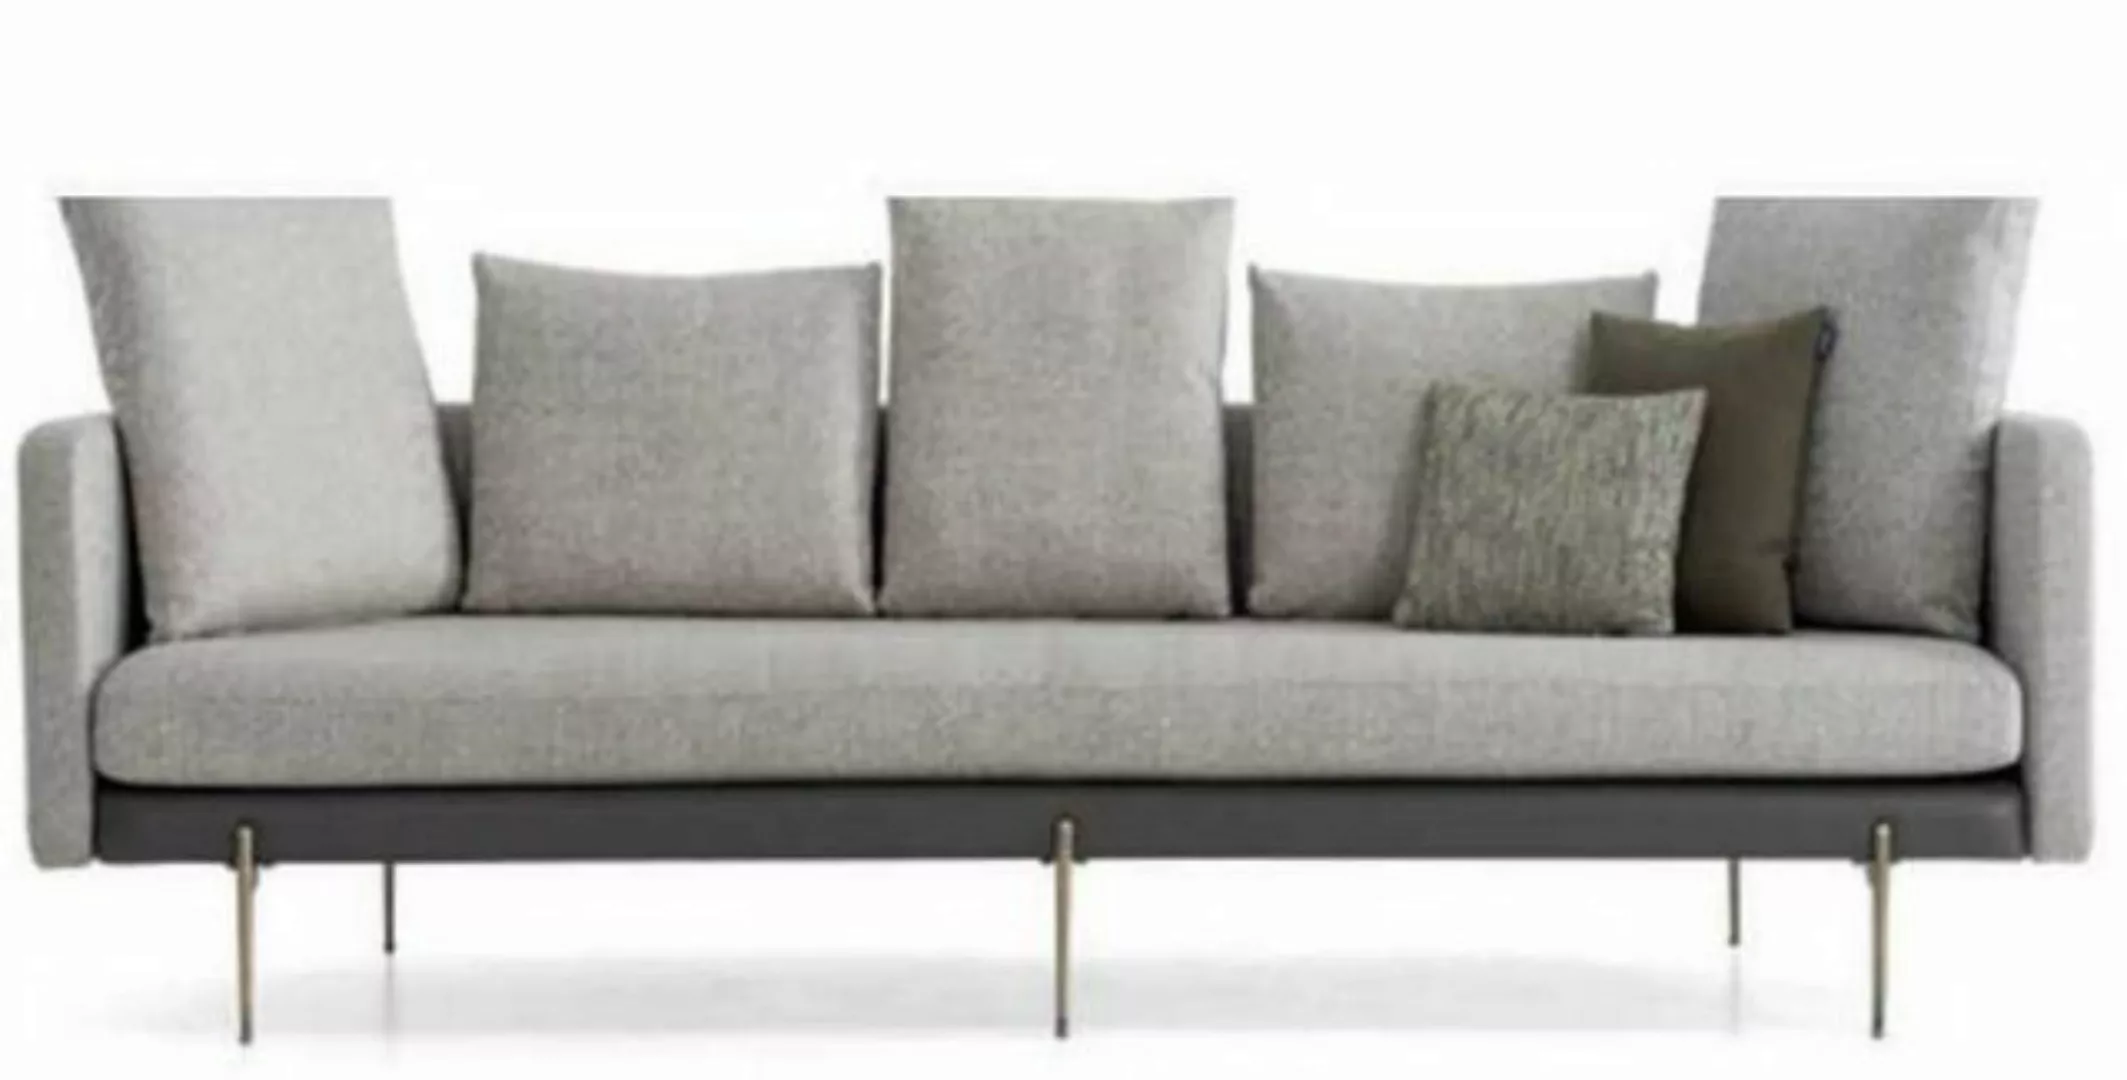 JVmoebel Sofa Modern 4 sitzer Sofa Grau Farbe Wohnzimmer Polster Textil, 1 günstig online kaufen